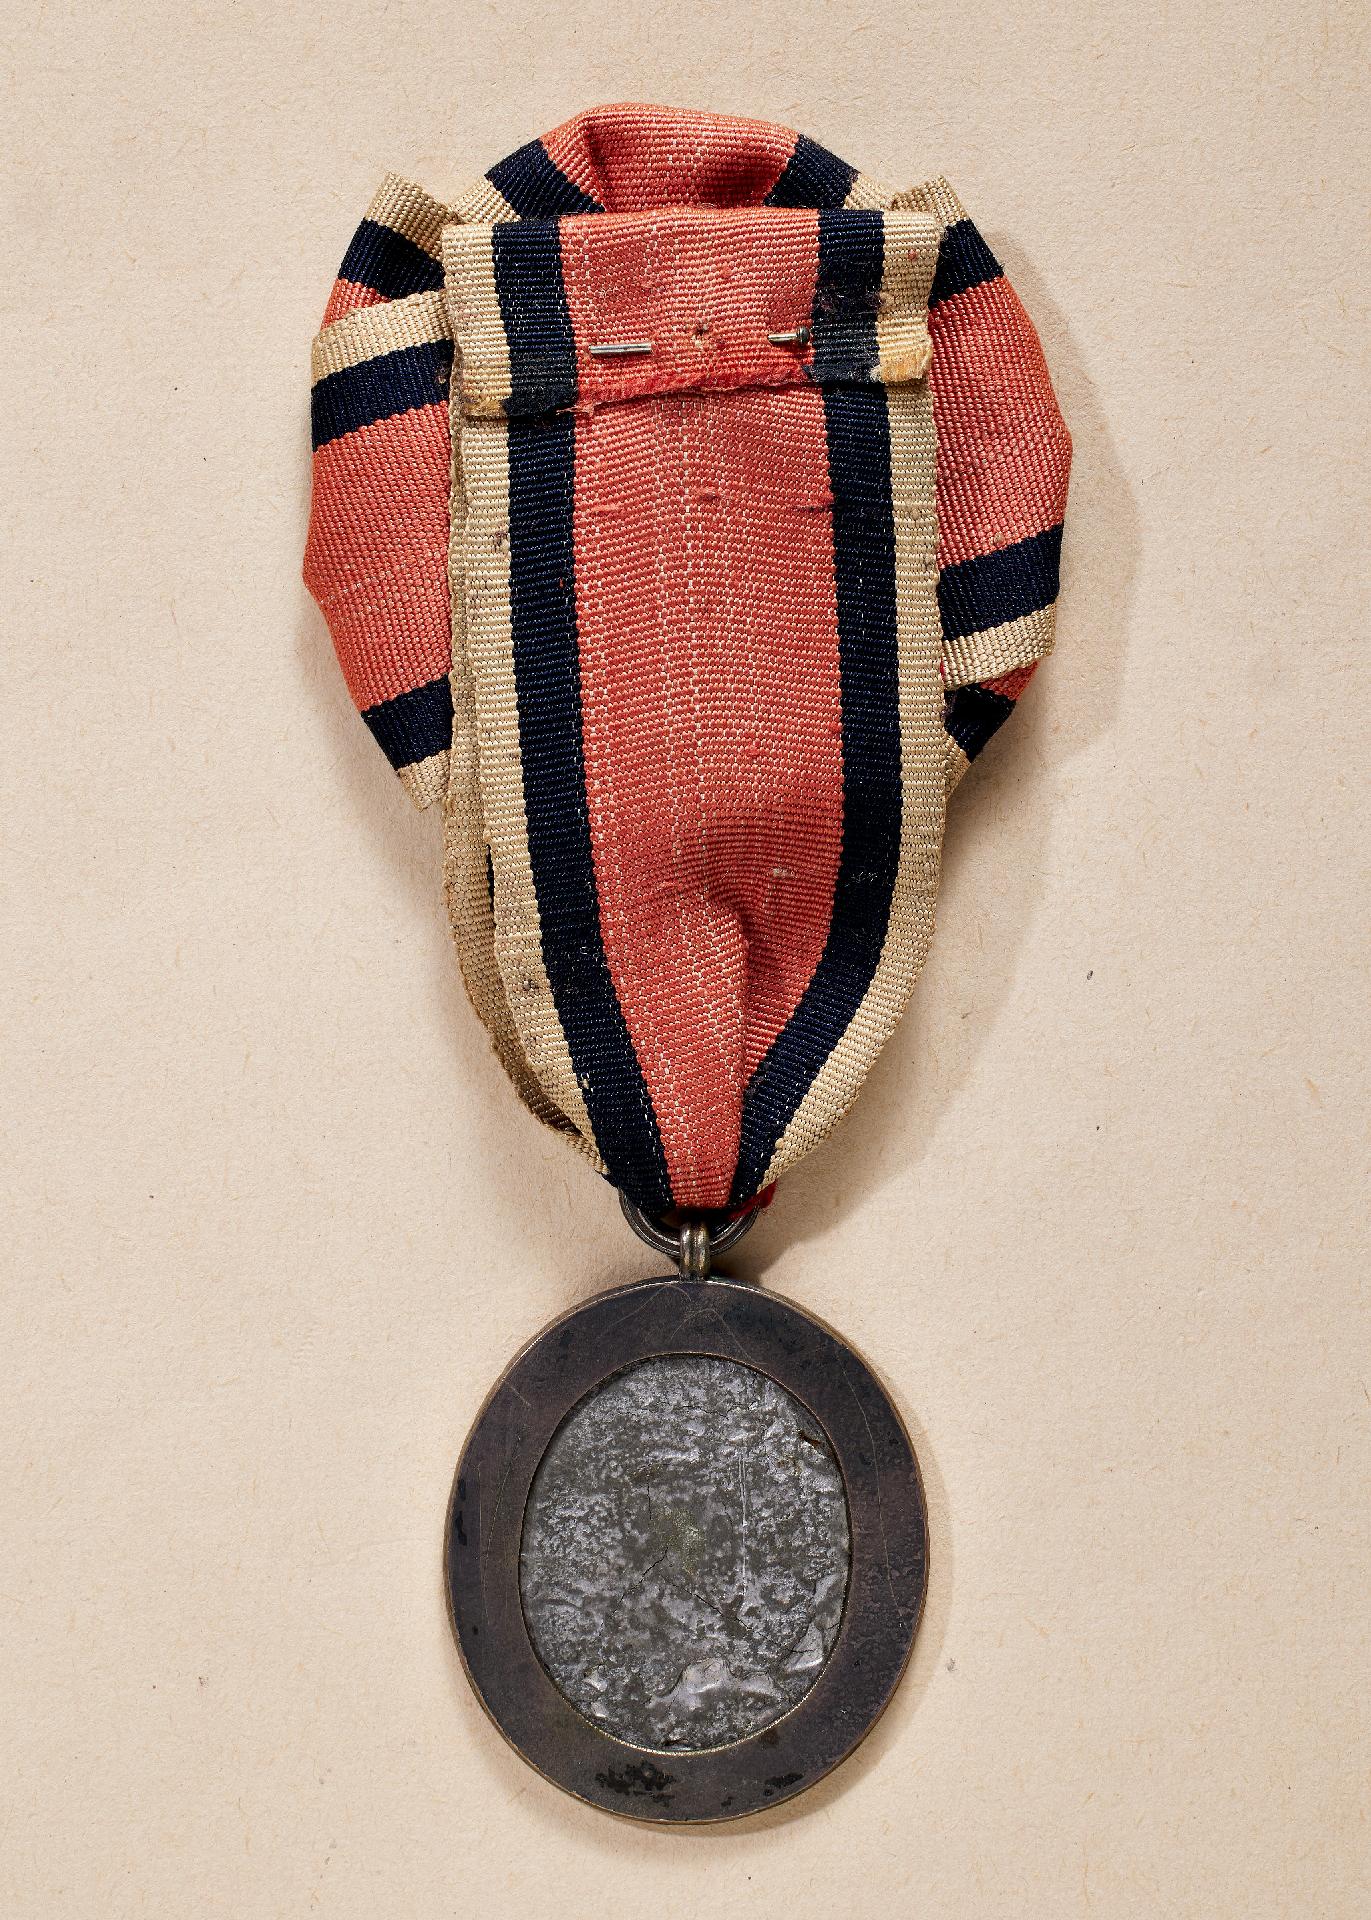 Frankreich : Insignie der Vereinigung der Eroberer der Bastille (Médaille - Insigne de L'Associa... - Bild 2 aus 2